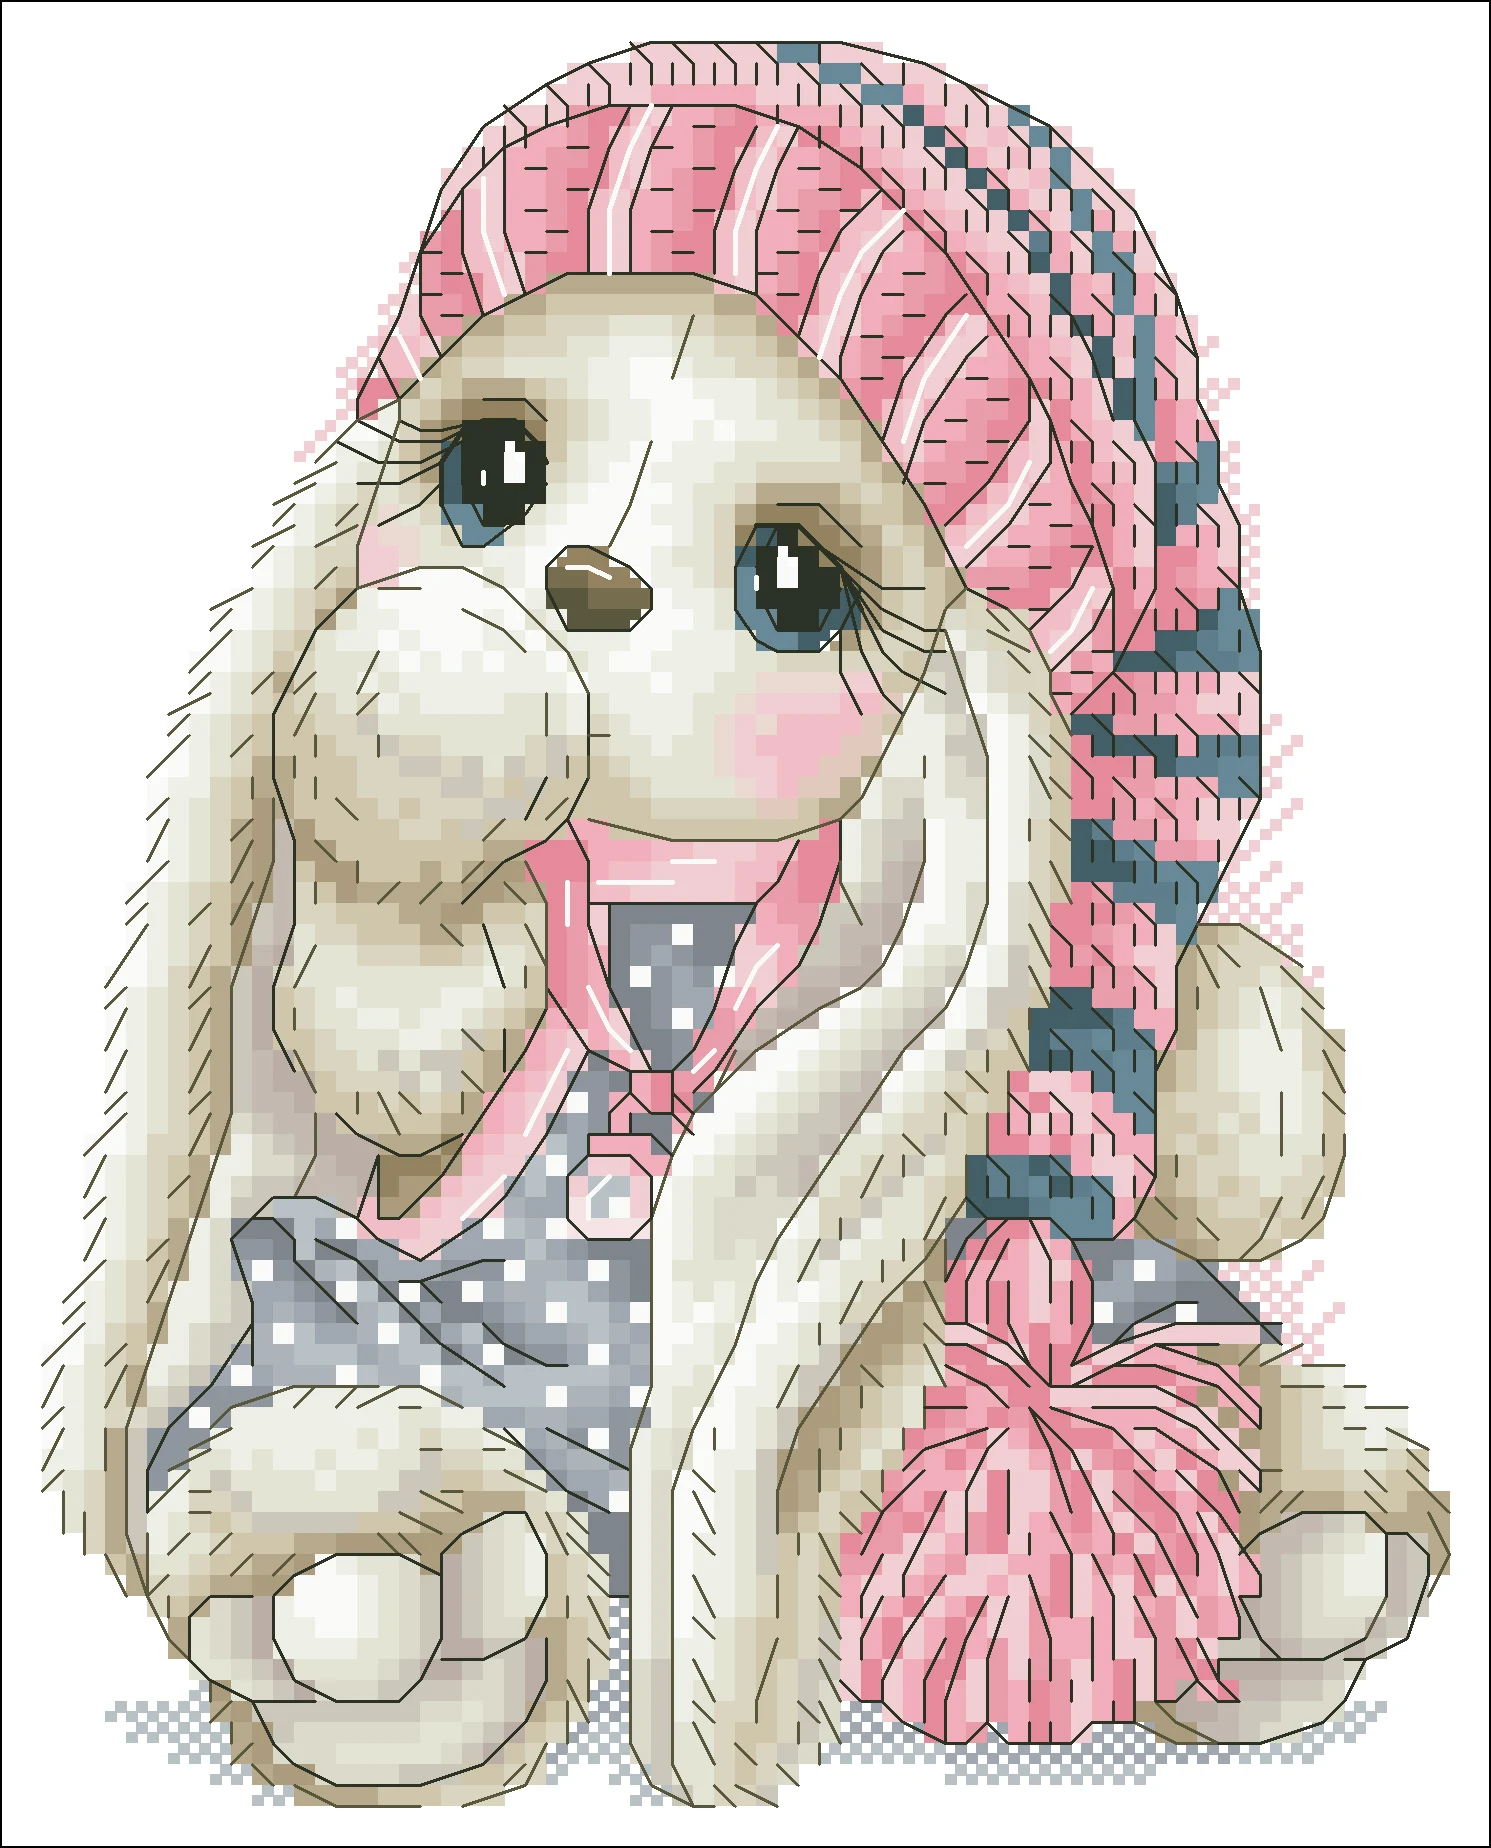 Кролик носить шерстяную шапочку Вышивка крестом посылка мультфильм 18ct 14ct 11ct ткань хлопок нить вышивка DIY рукоделие